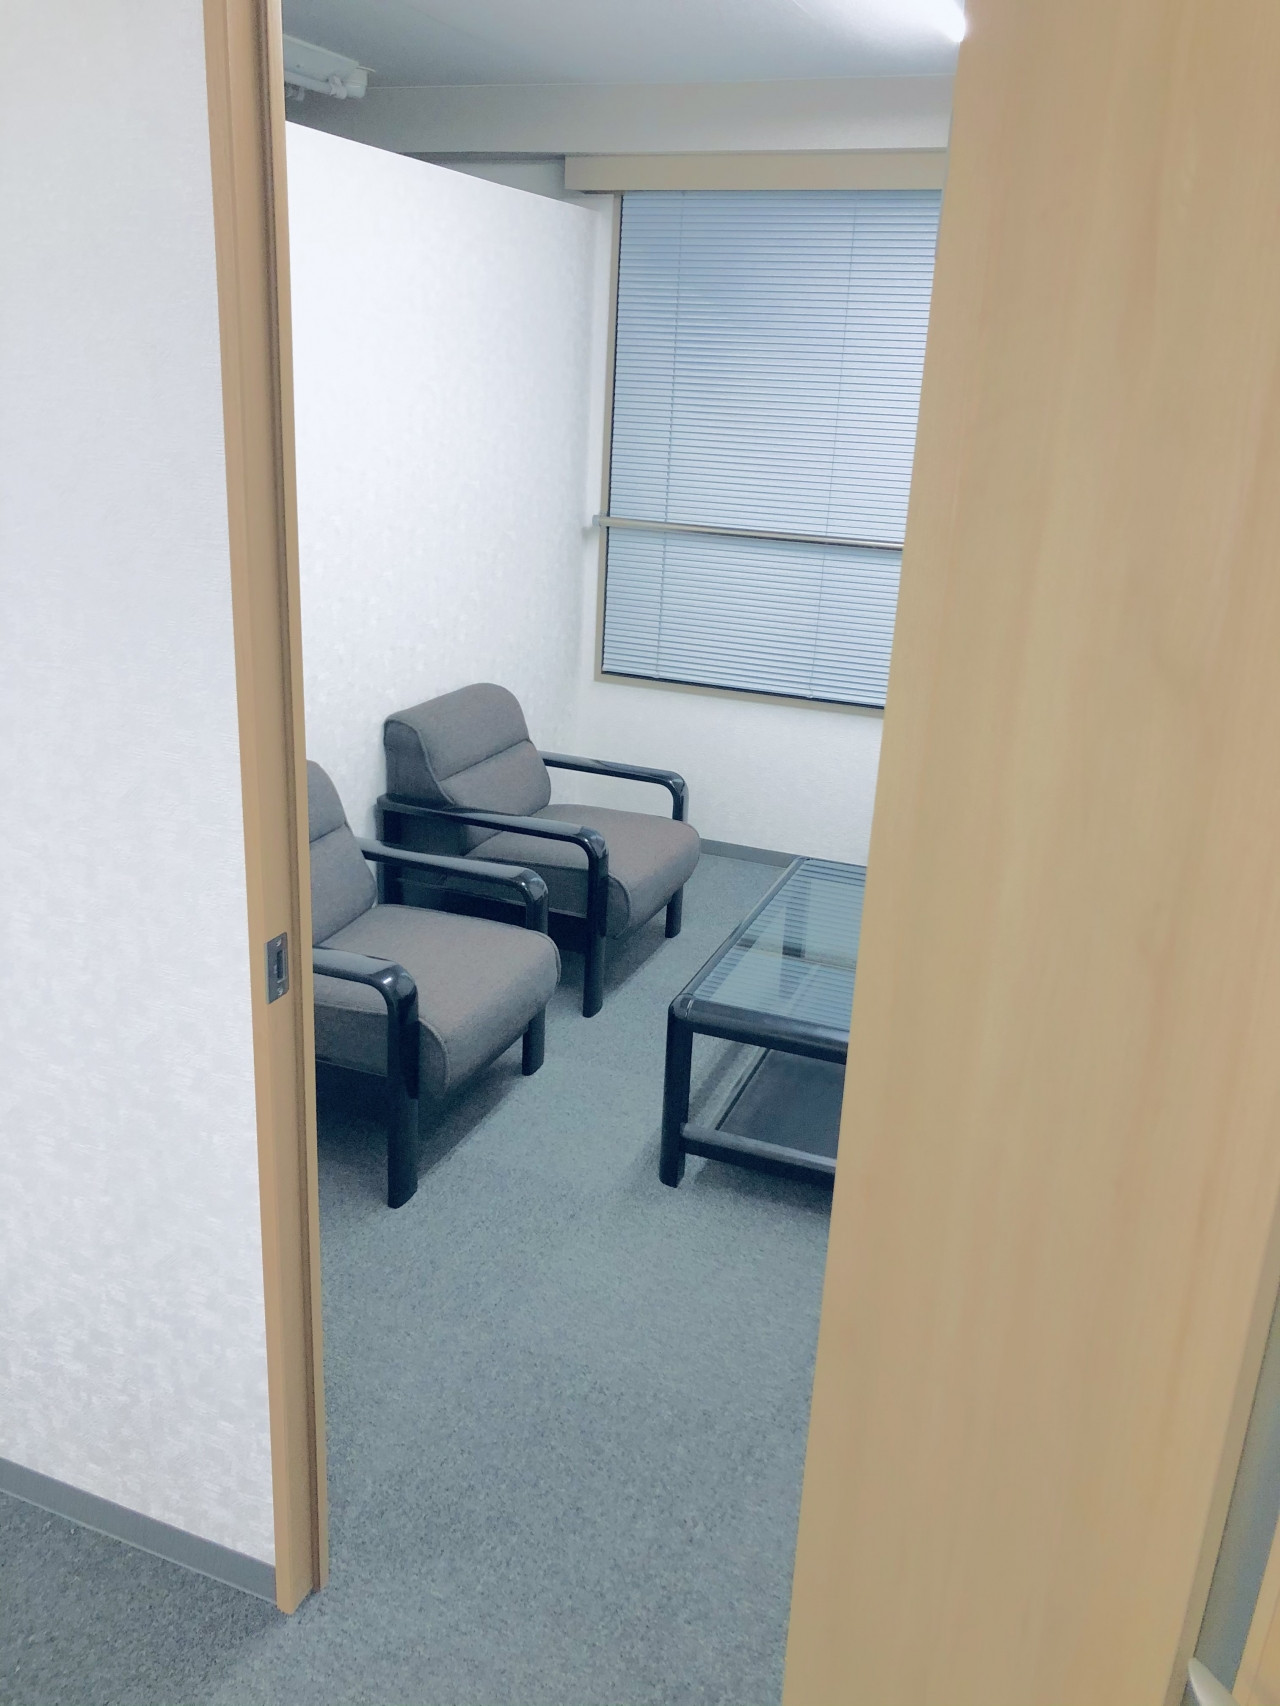 11  埼玉県三芳町商工会2階事務局内執務室相談応接室